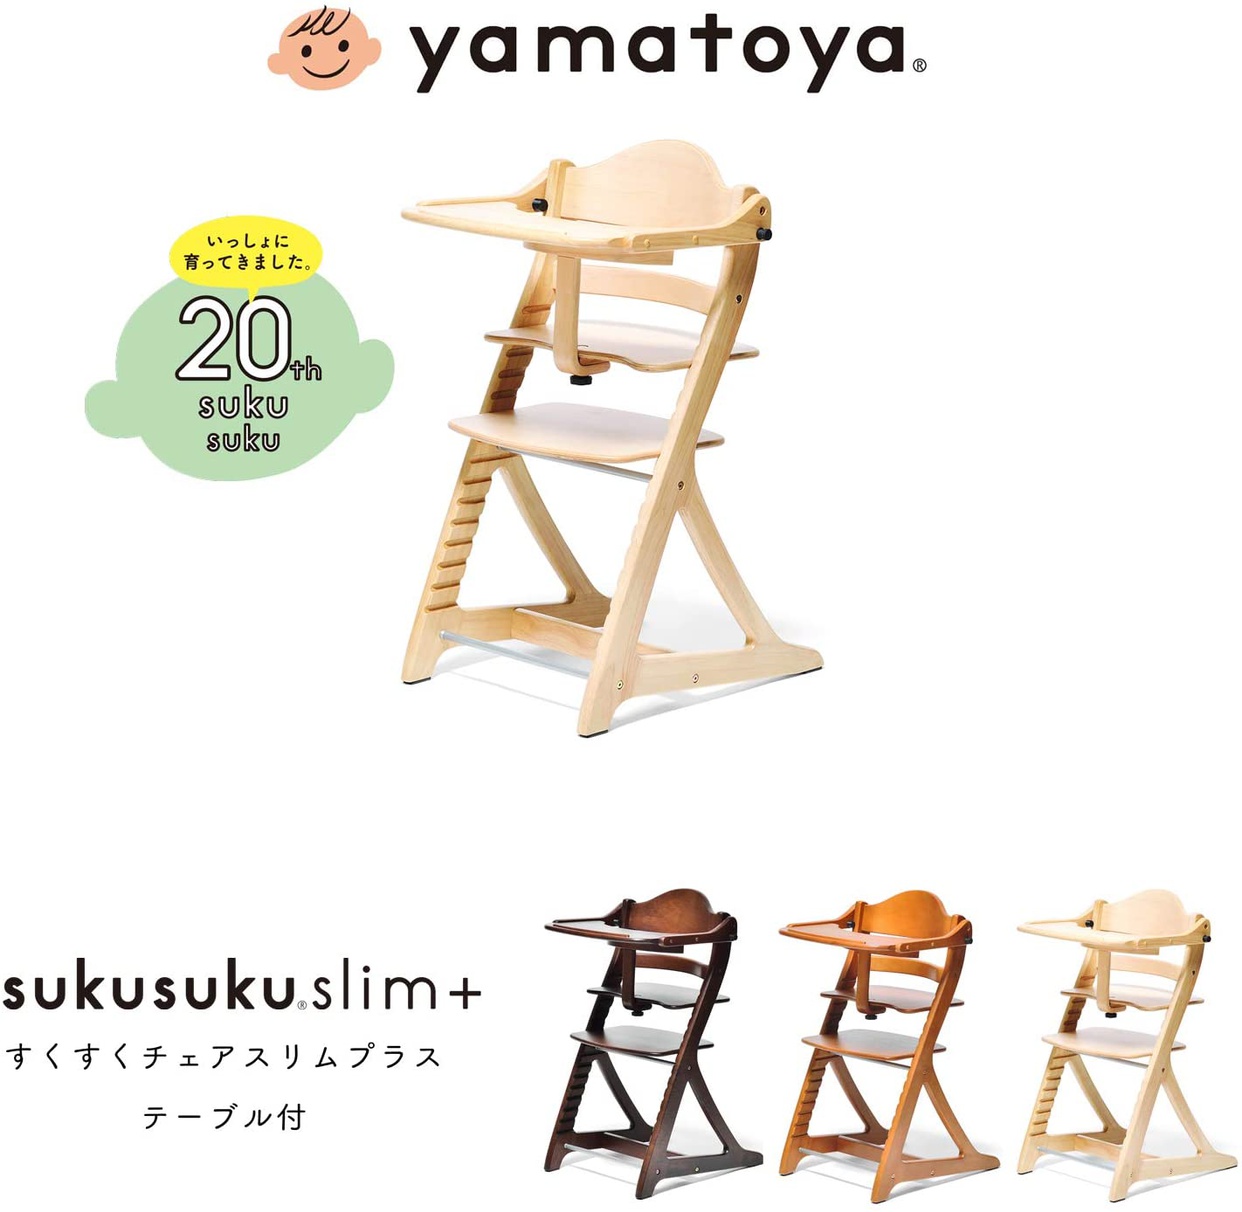 大和屋(yamatoya) すくすくチェア スリムプラス テーブル付の商品画像2 